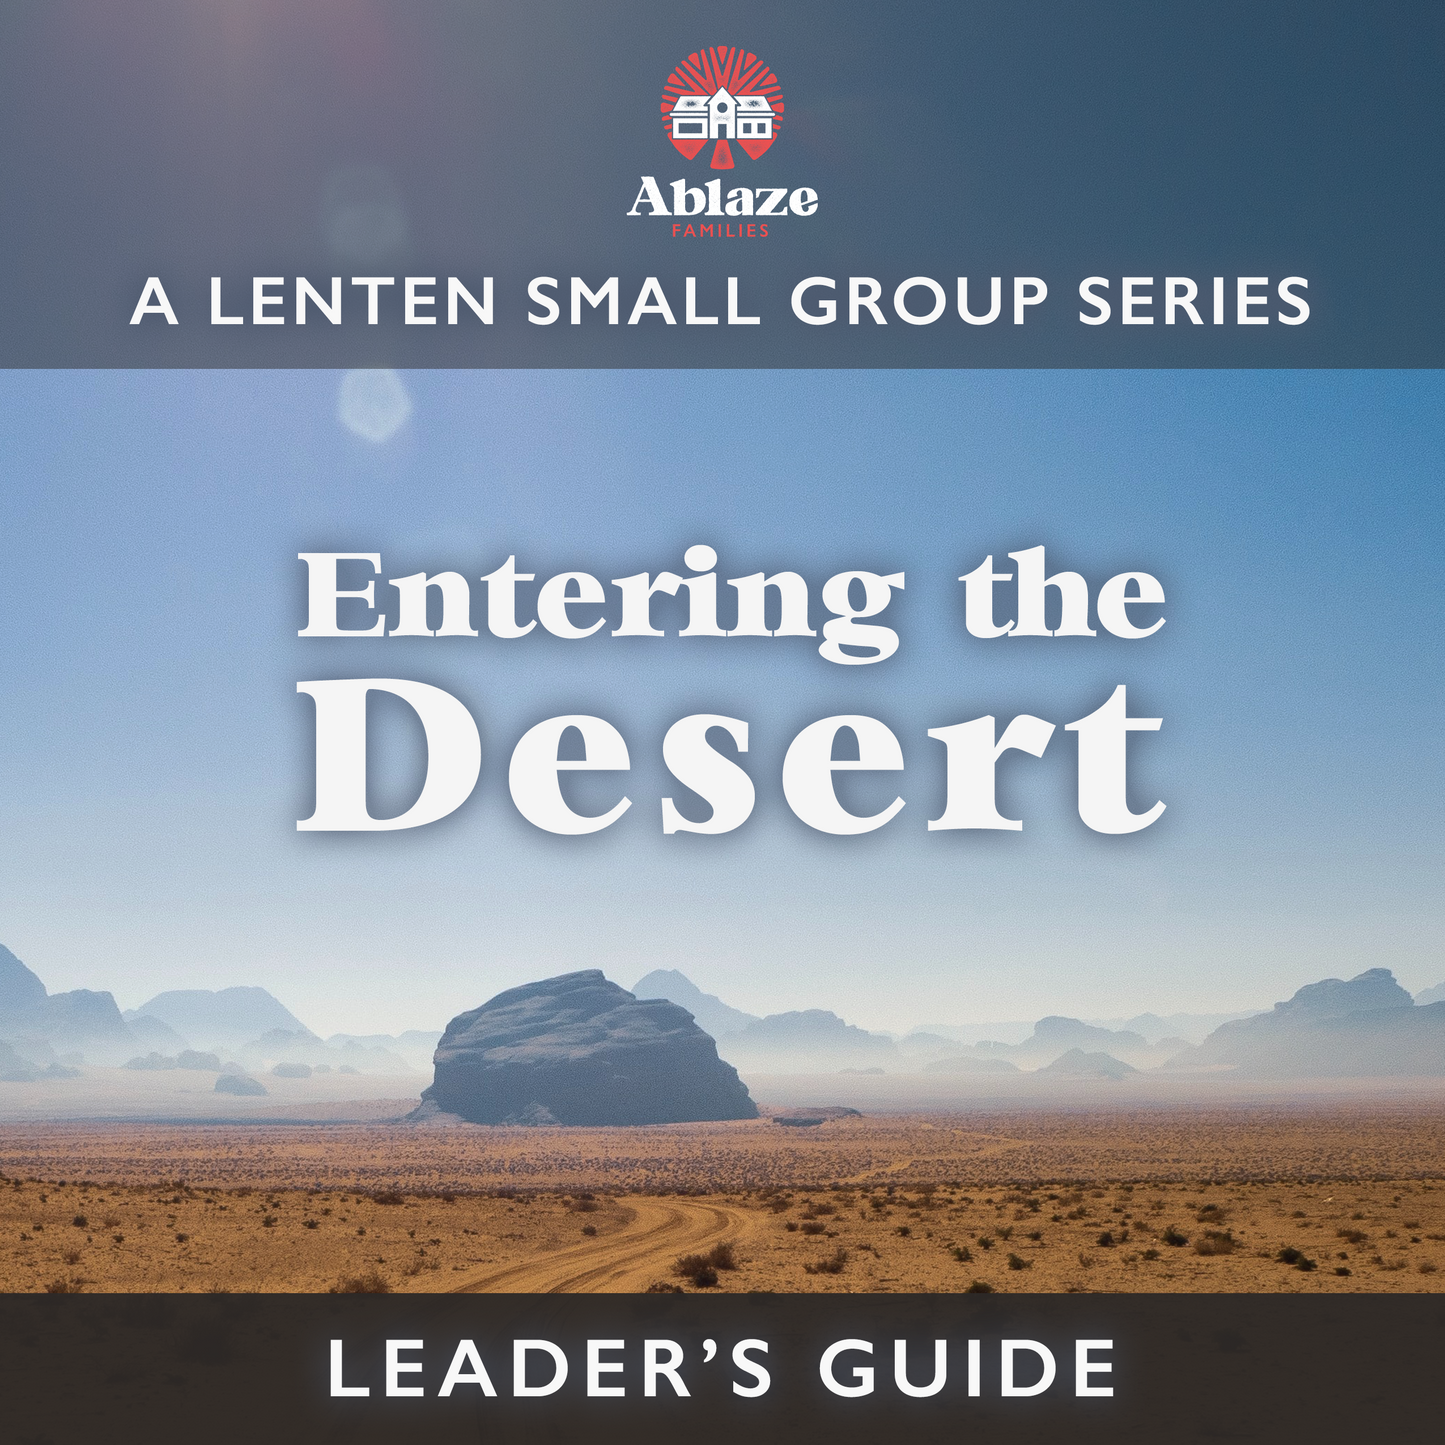 Leader's Guide to "Entering the Desert"